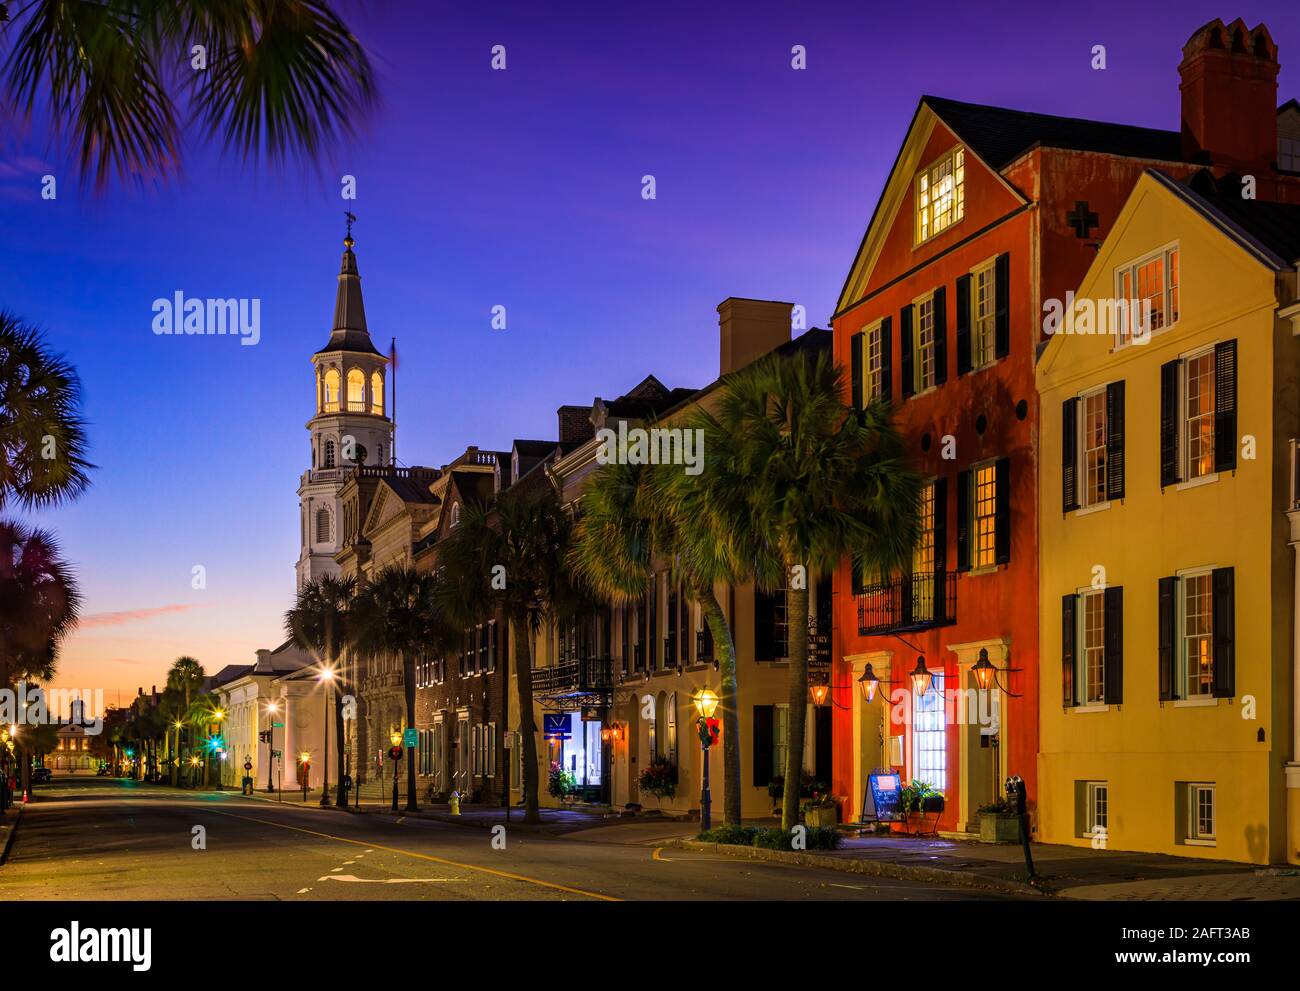 Charleston est la plus ancienne et la plus grande ville de l'Etat américain de Caroline du Sud, connue pour son rôle important dans le commerce des esclaves américains. La ville est le c Banque D'Images